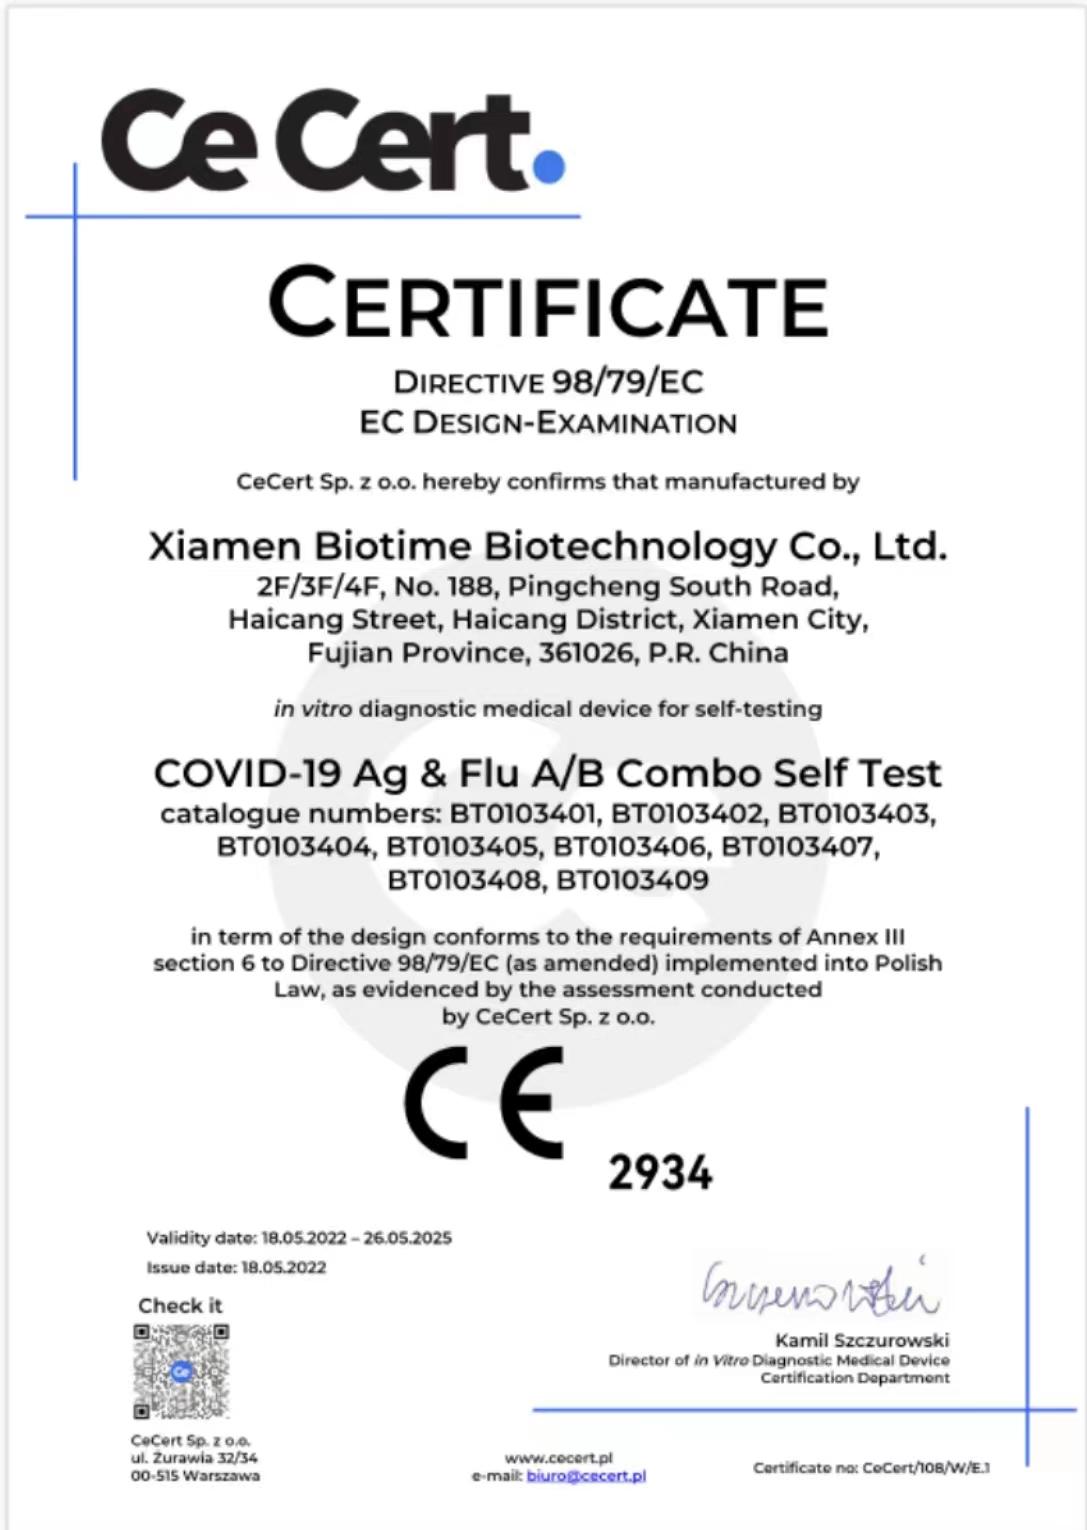 Biotime's Комбинированный тест COVID-19 ag & flua/b получил маркировку CE для самотестирования
